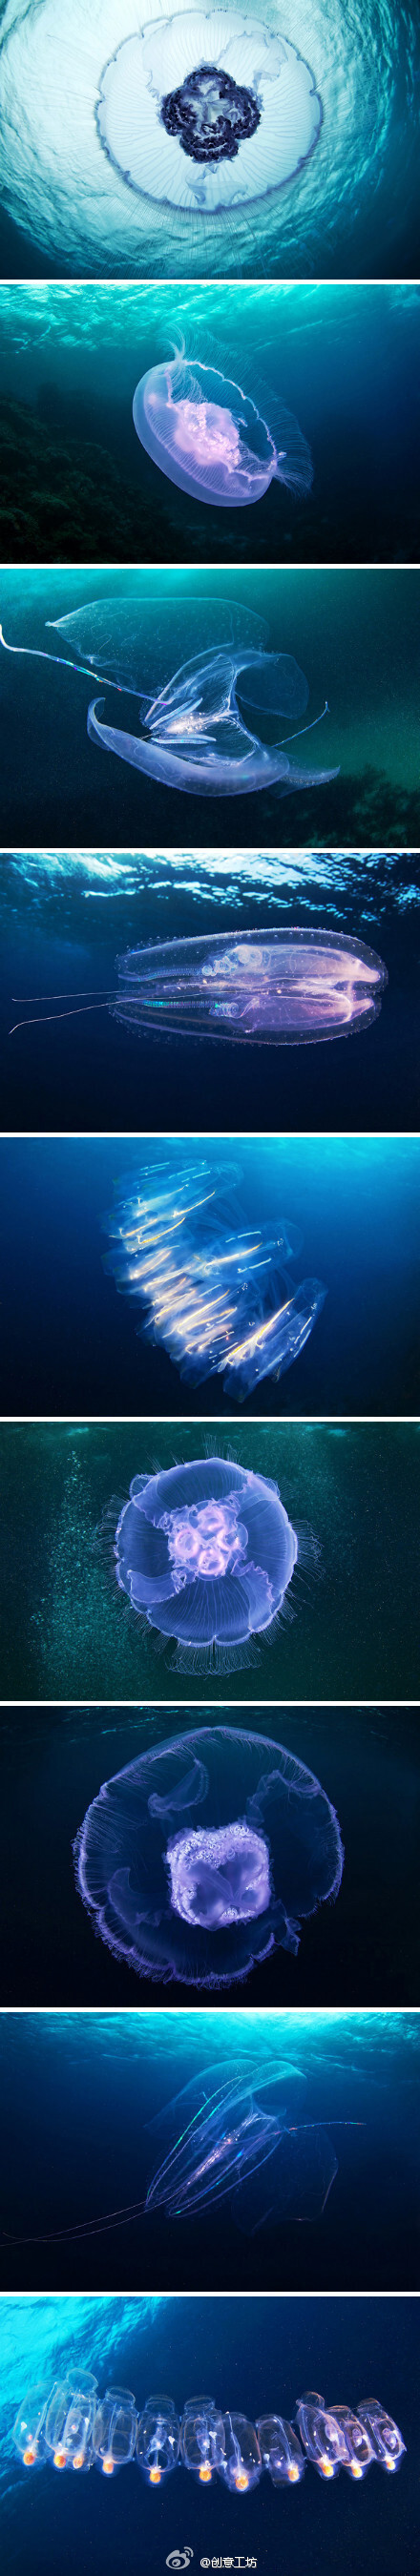 ：【水下生物摄影】俄罗斯摄影师Alexander Semenov的新作《Weird Space》，2月在红海地区拍摄的海月水母（Aurelia aurita）等海洋生物。